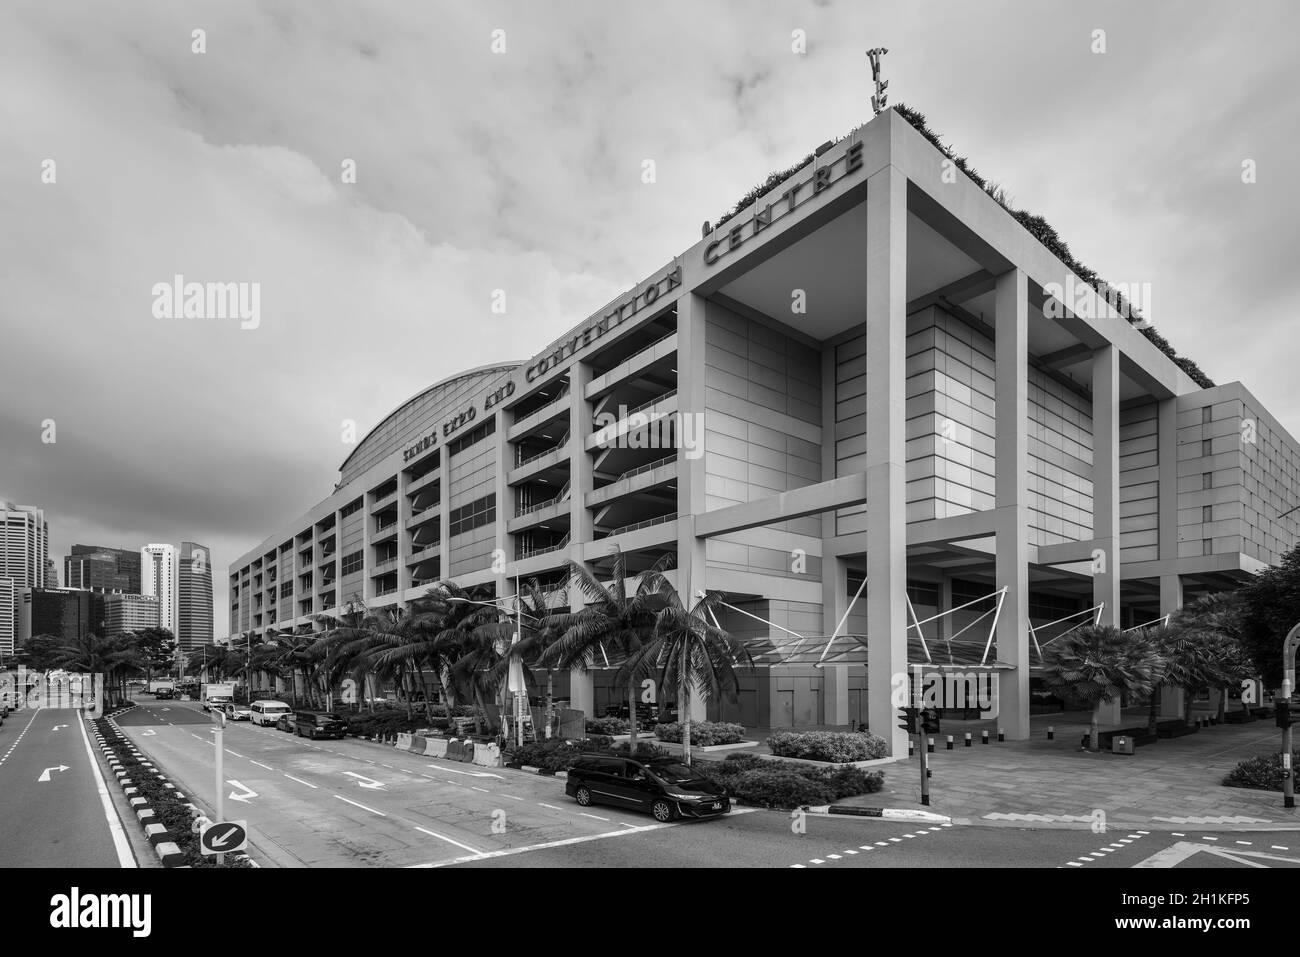 Singapour - 5 décembre 2019 : vue sur le centre d'exposition et de congrès Marina Bay Sands à Singapour.Noir et blanc monochrome. Banque D'Images